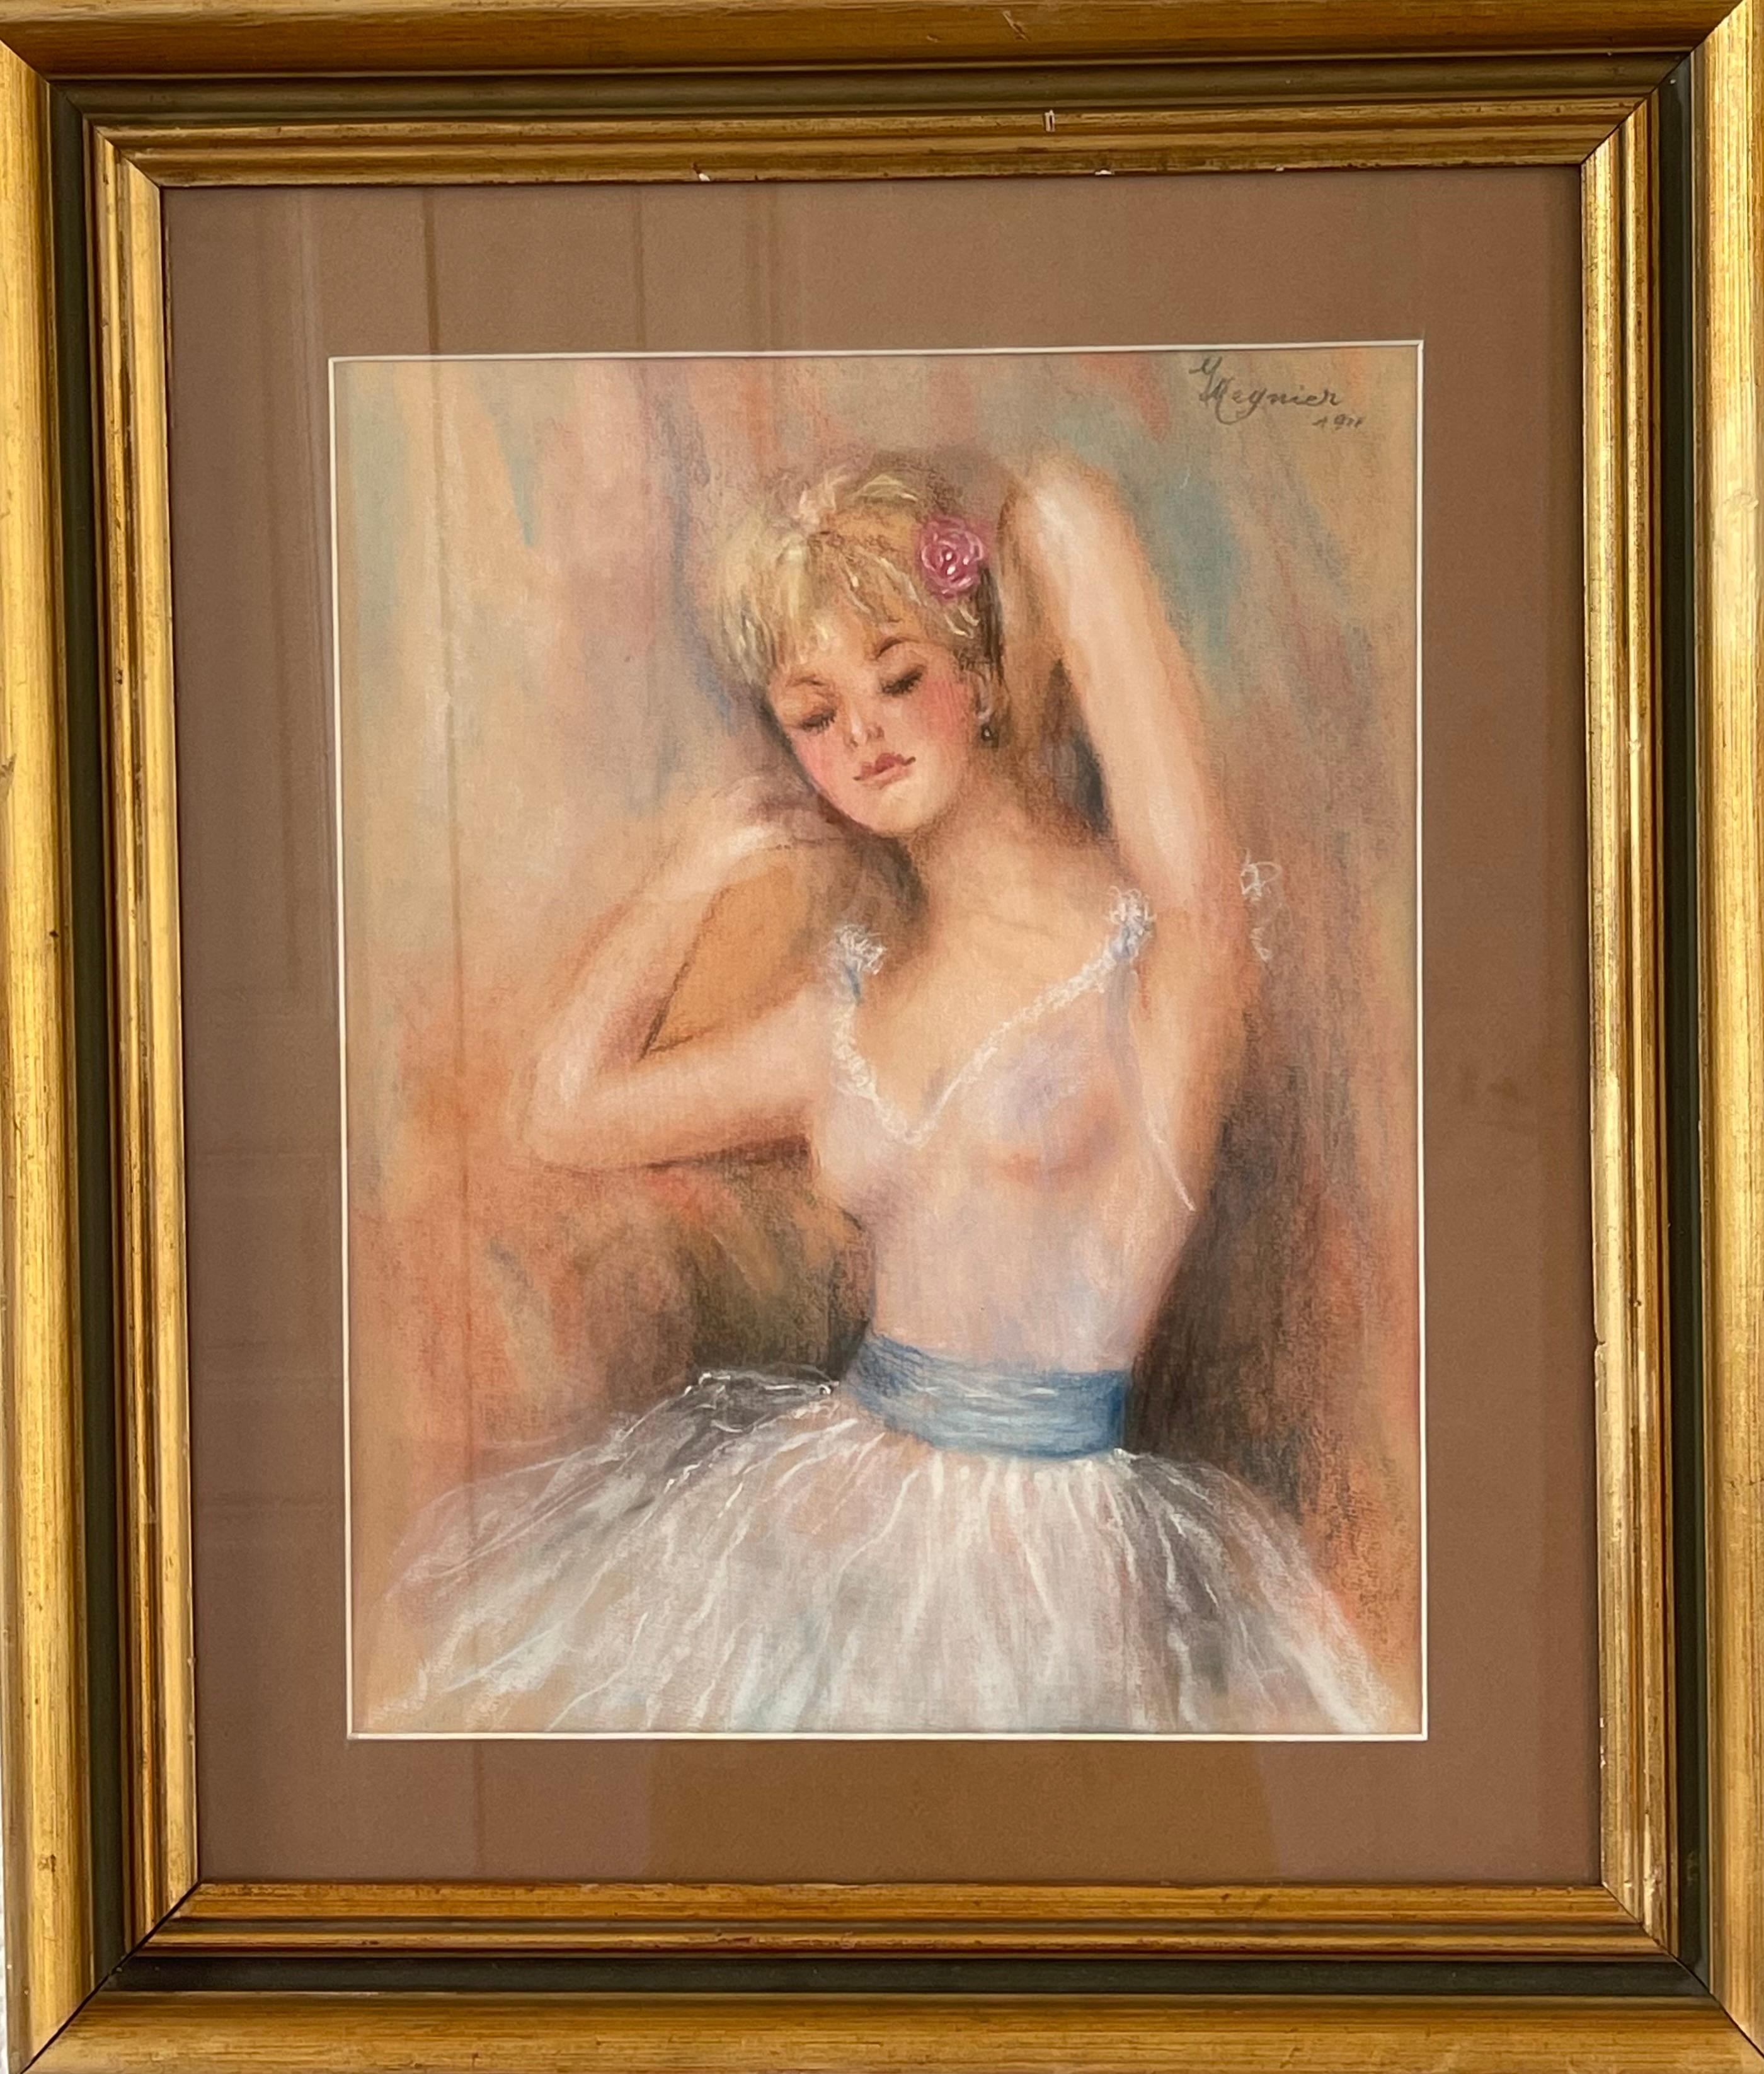 Ce magnifique tableau encadré de Meynier représente une femme blonde habillée en tenue de ballet, portant un justaucorps et un tutu blancs ornés d'une ceinture bleue. La femme est représentée les yeux fermés, les bras gracieusement levés dans une